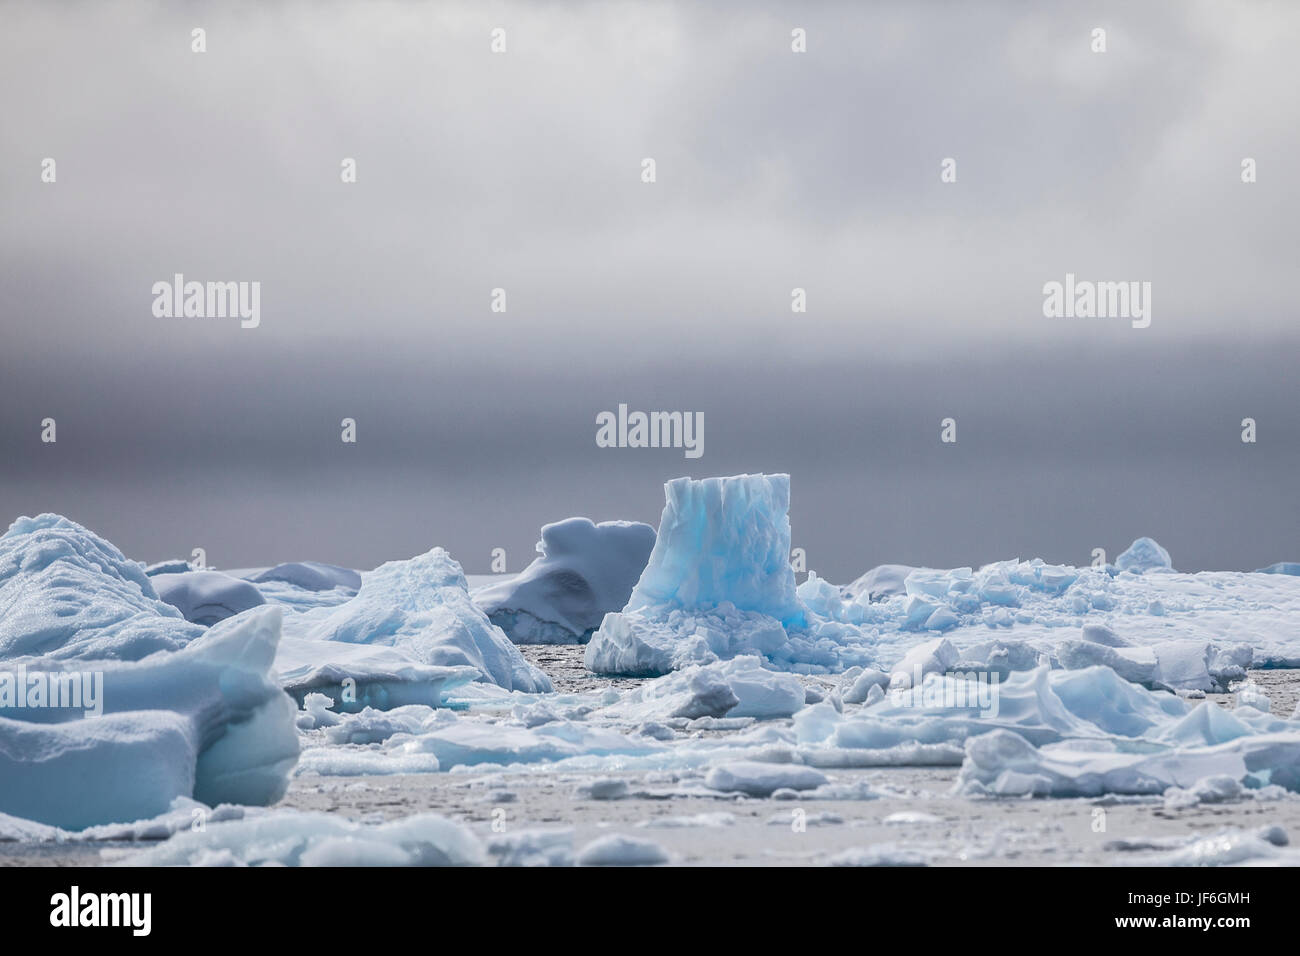 Les icebergs dans la péninsule Antarctique, l'Antarctique. Banque D'Images